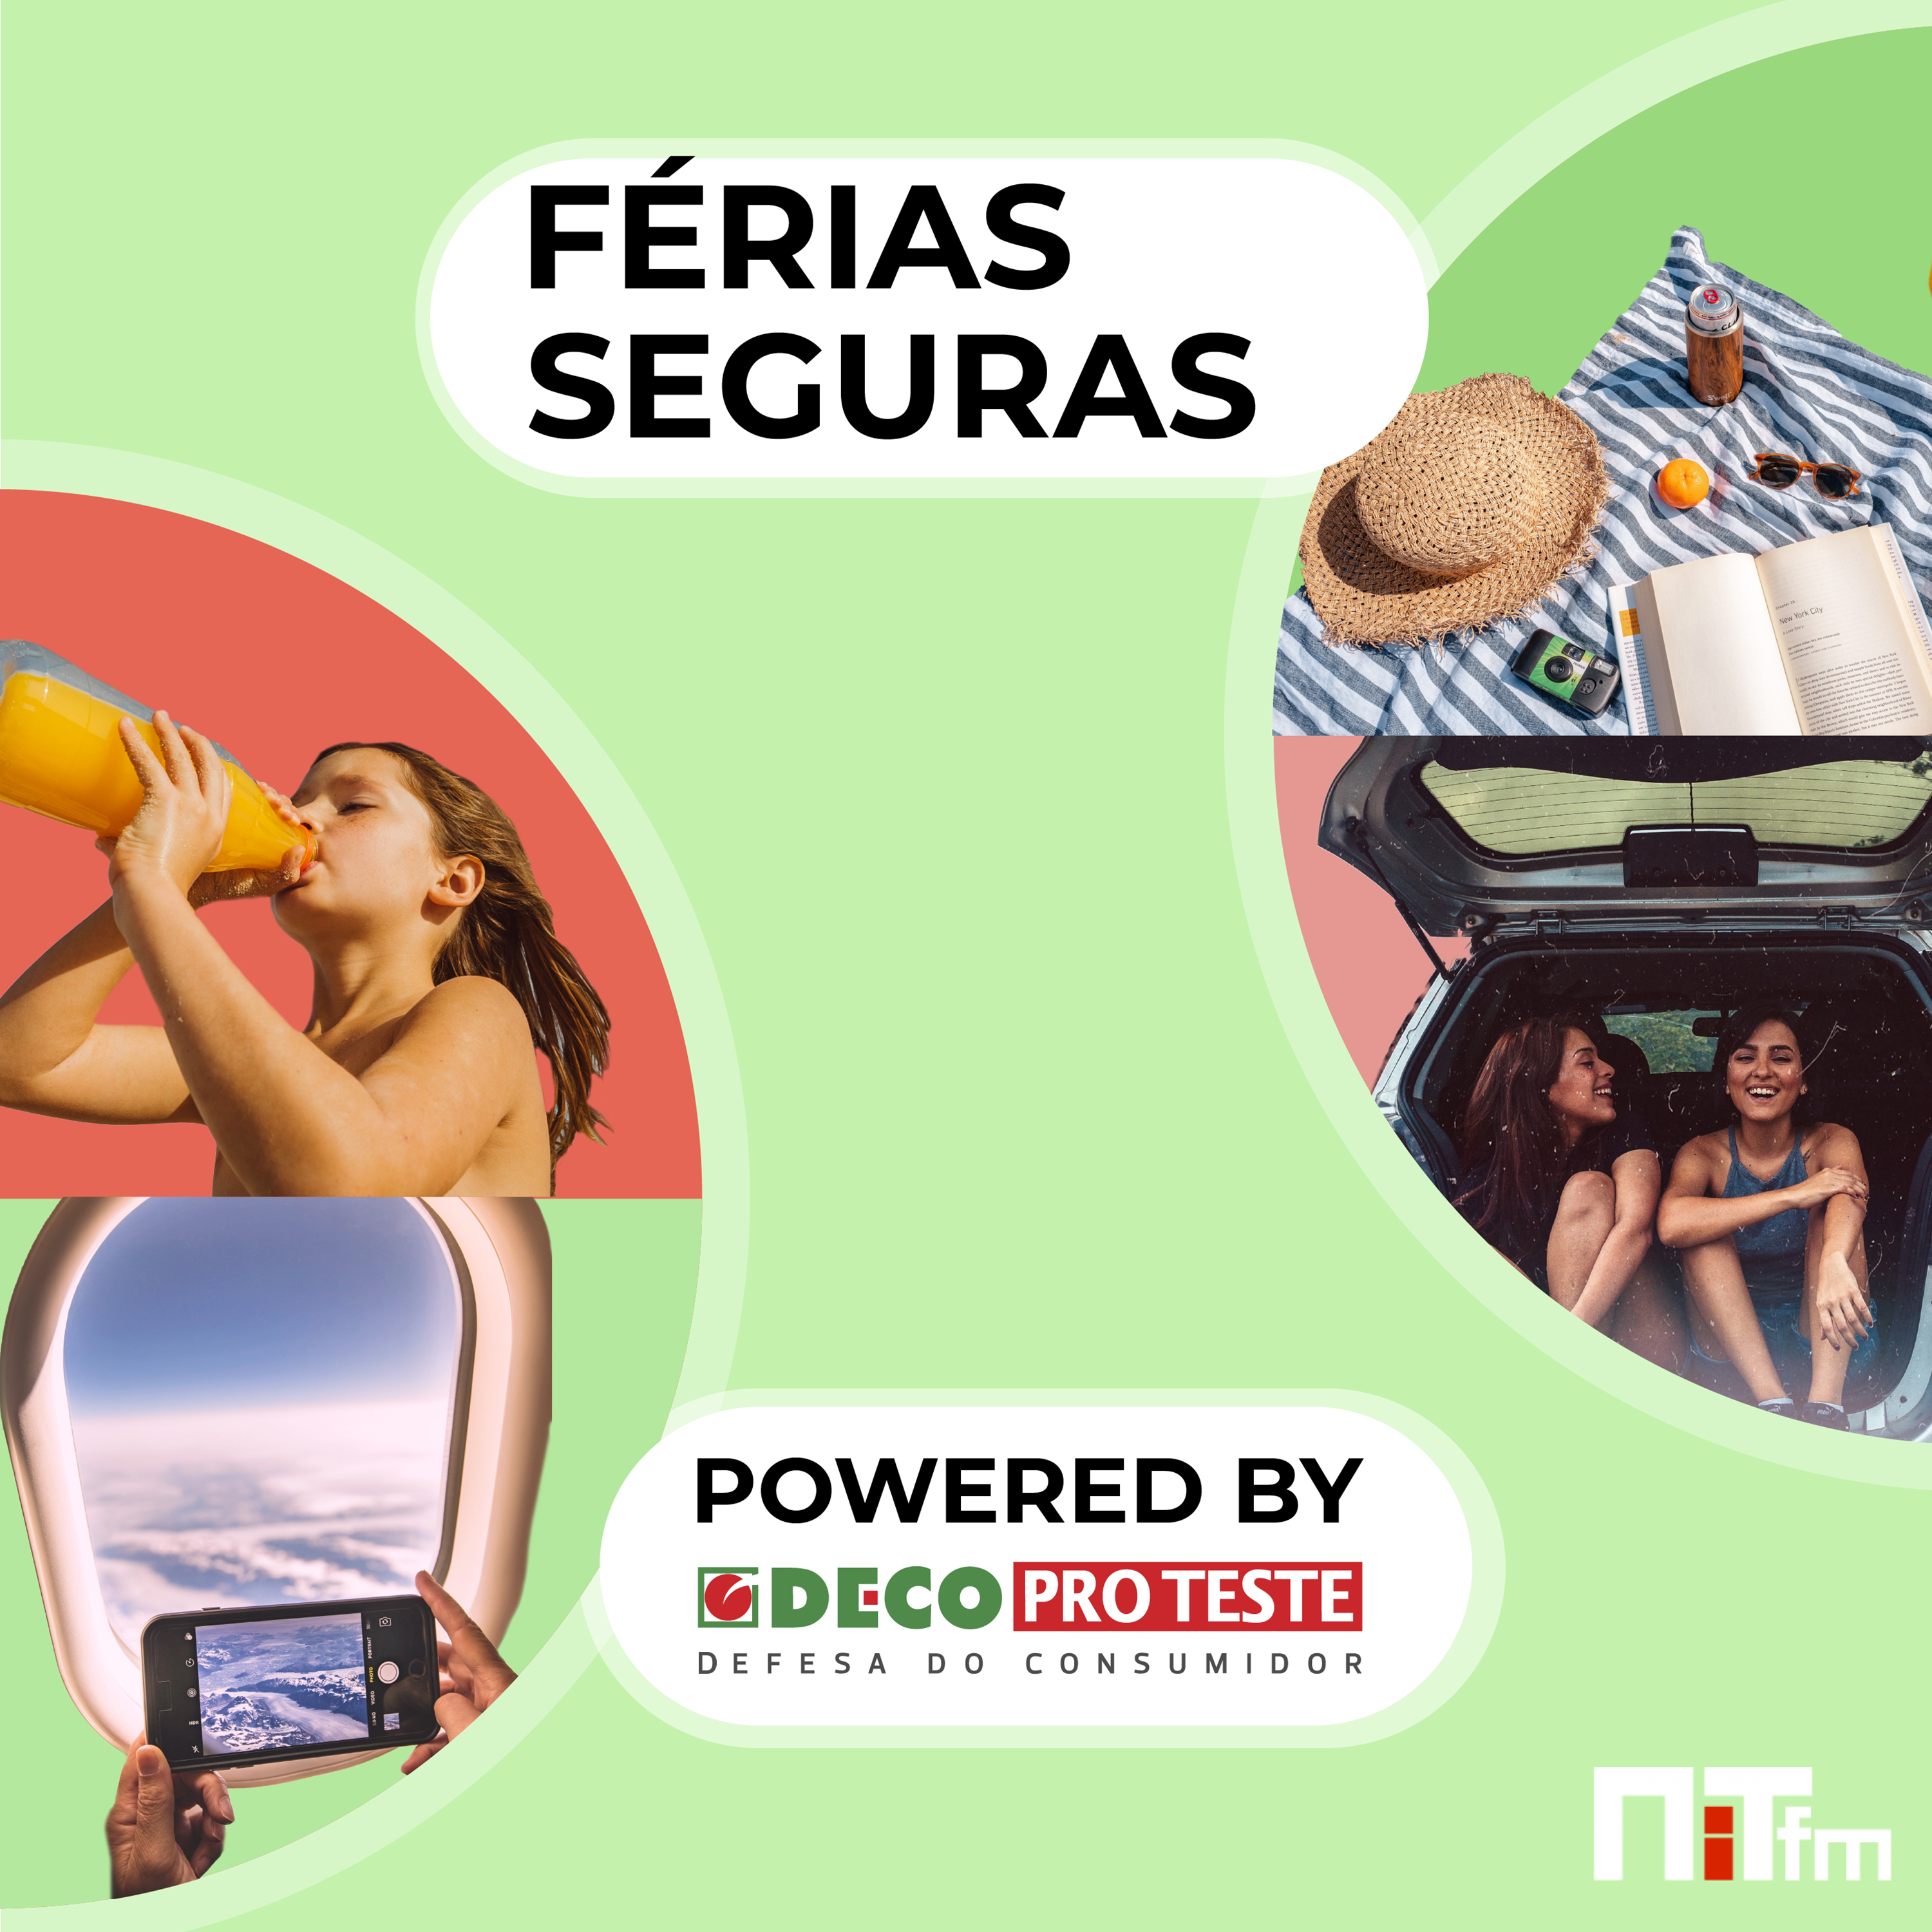 NiTfm — Férias Seguras powered by DECO Proteste